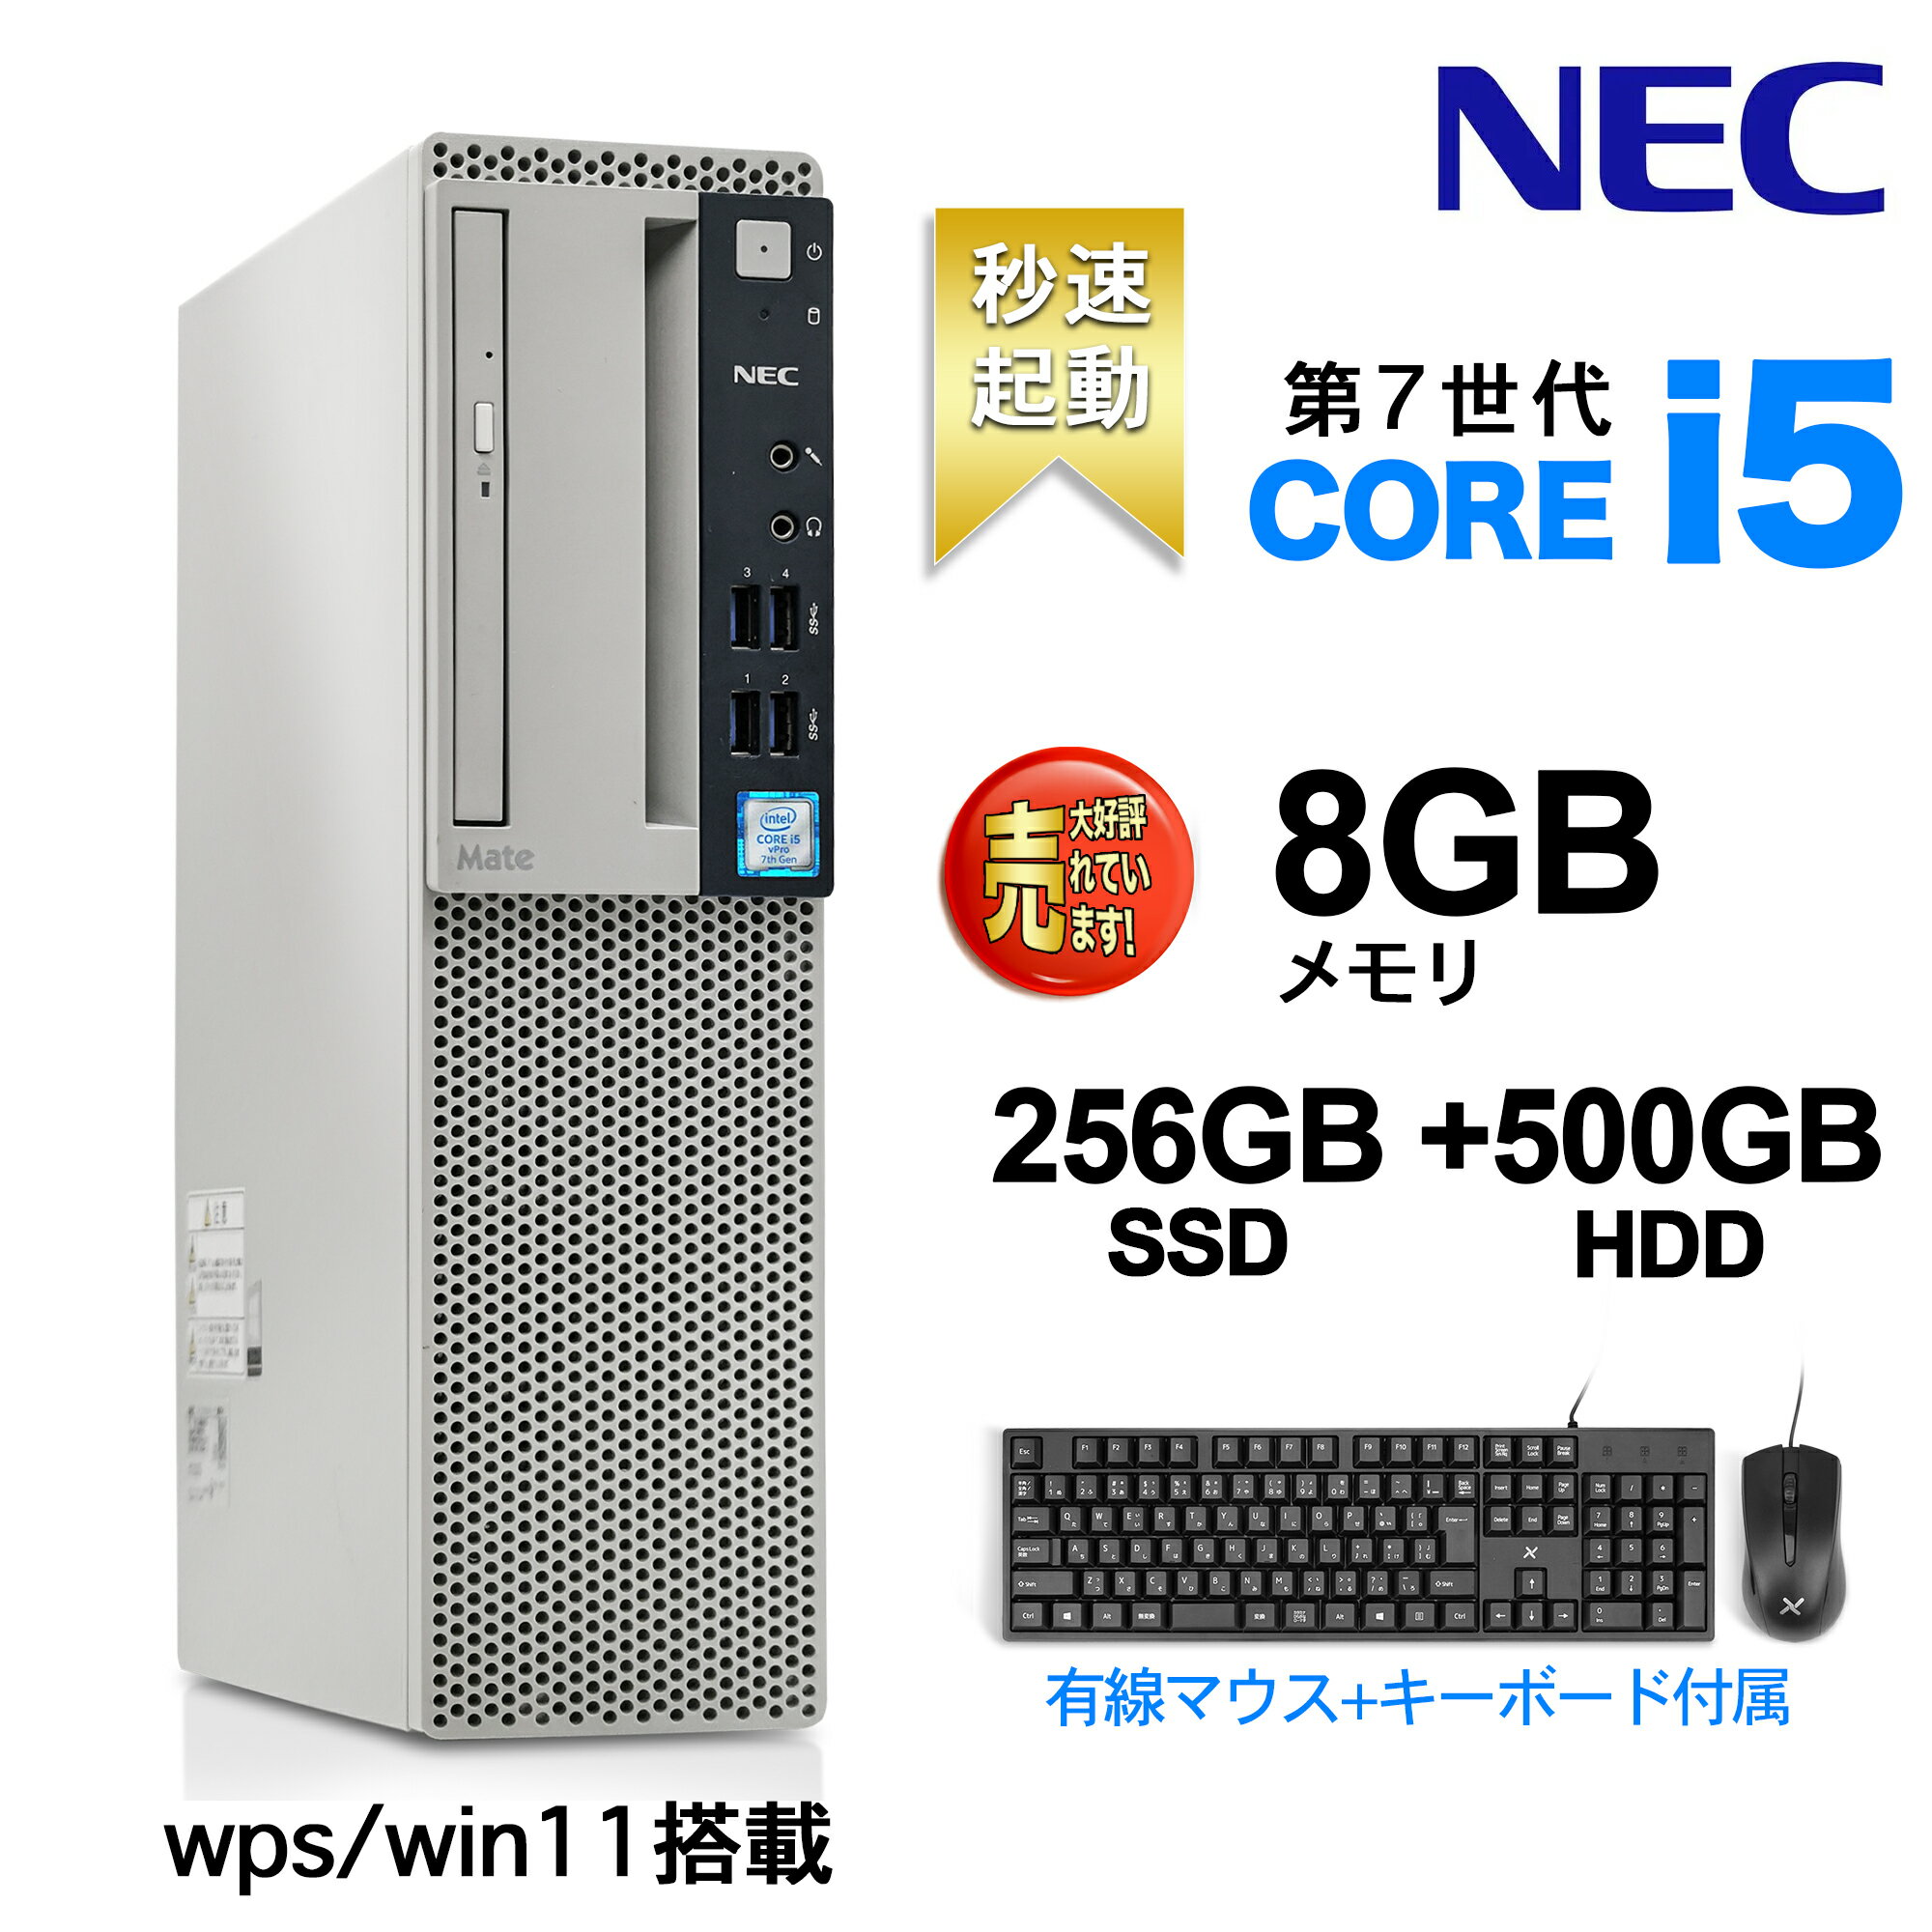 デスクトップパソコン Office付き Win 11搭載 NEC 国産大手メーカー 7500シリーズ 高性能第7世代 Core i5 4コア 3.4GHz 無線LAN/DVDドライブ/HDMI/USB3.0/KINGSOFTカード/有線キーボードとマウス付属 Desktop デスクトップパソコン デスクトップPC 8GB/256GB HDD:500GB